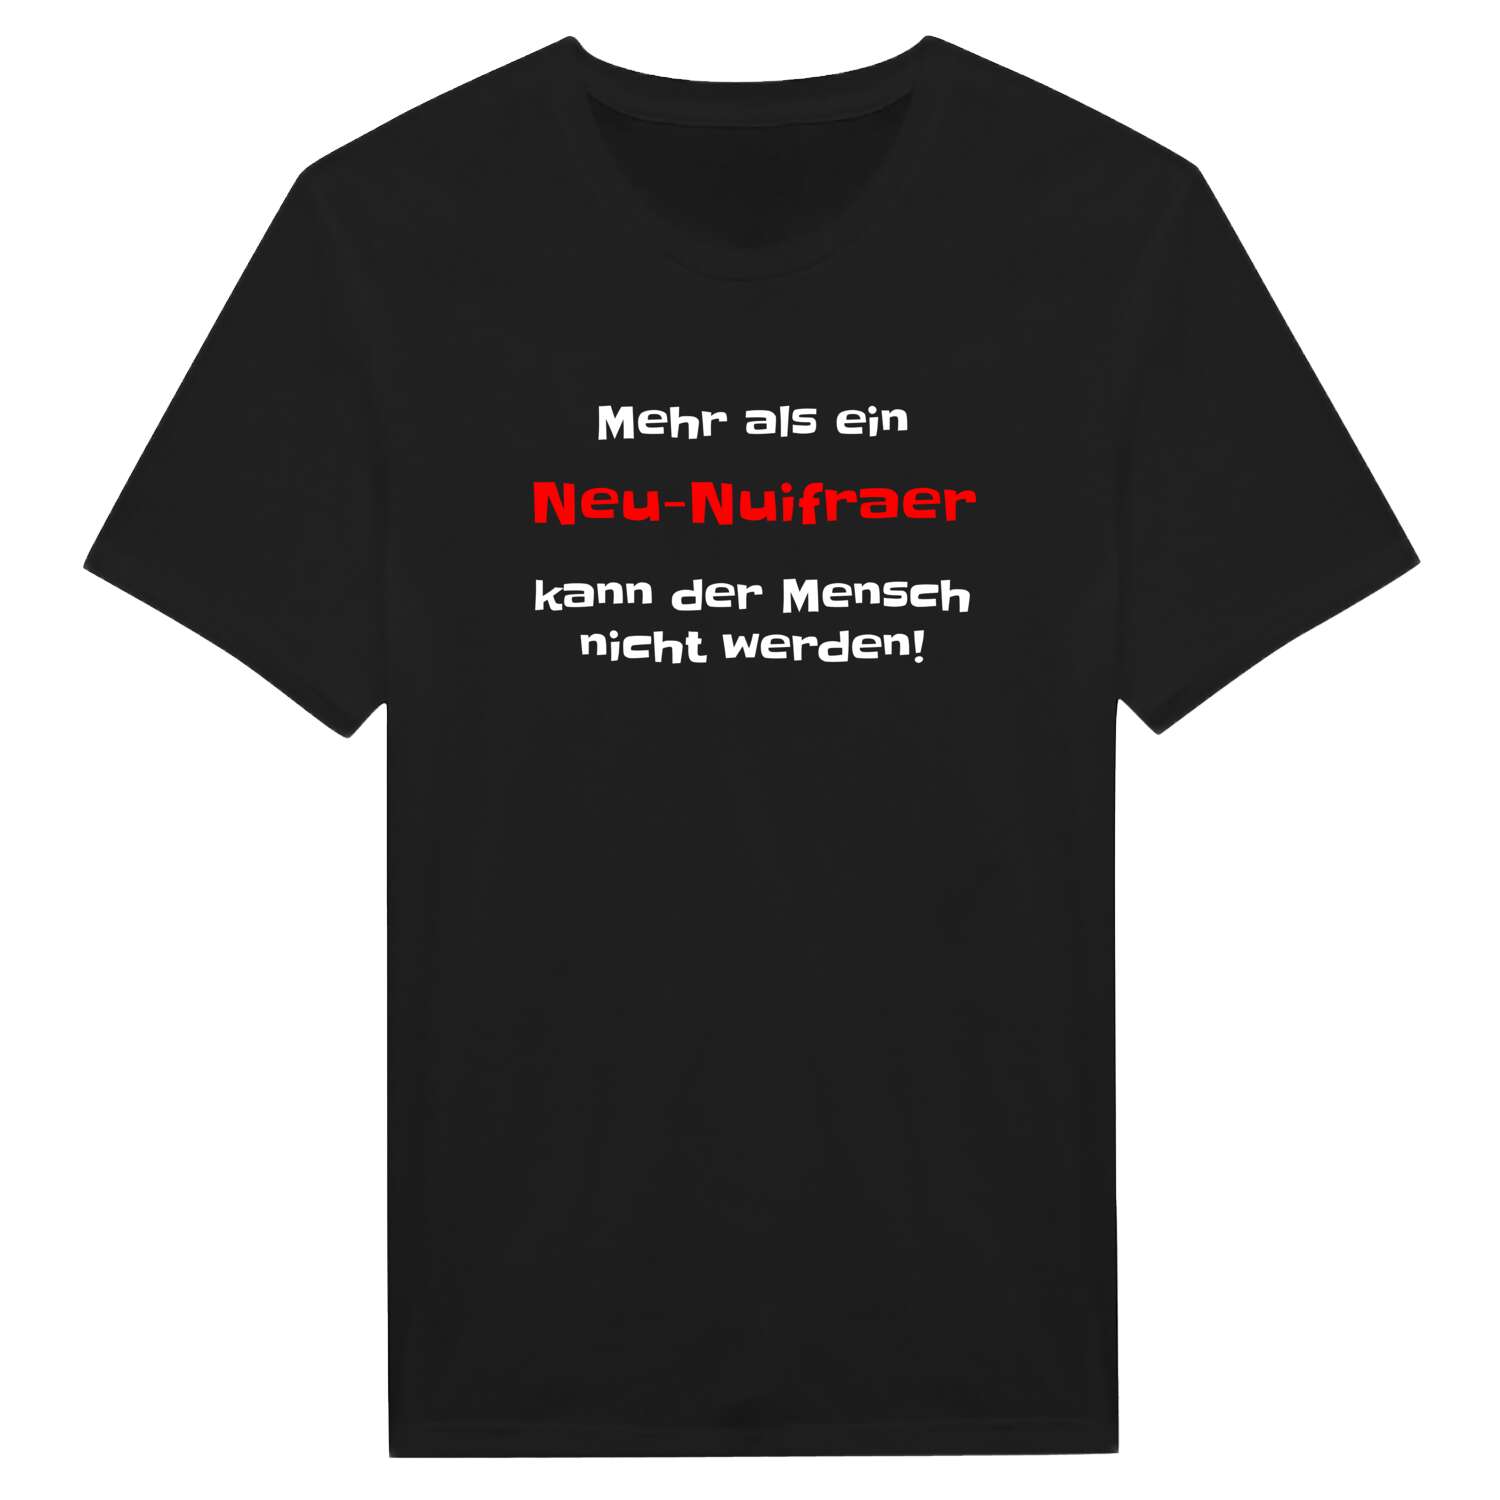 Neu-Nuifra T-Shirt »Mehr als ein«